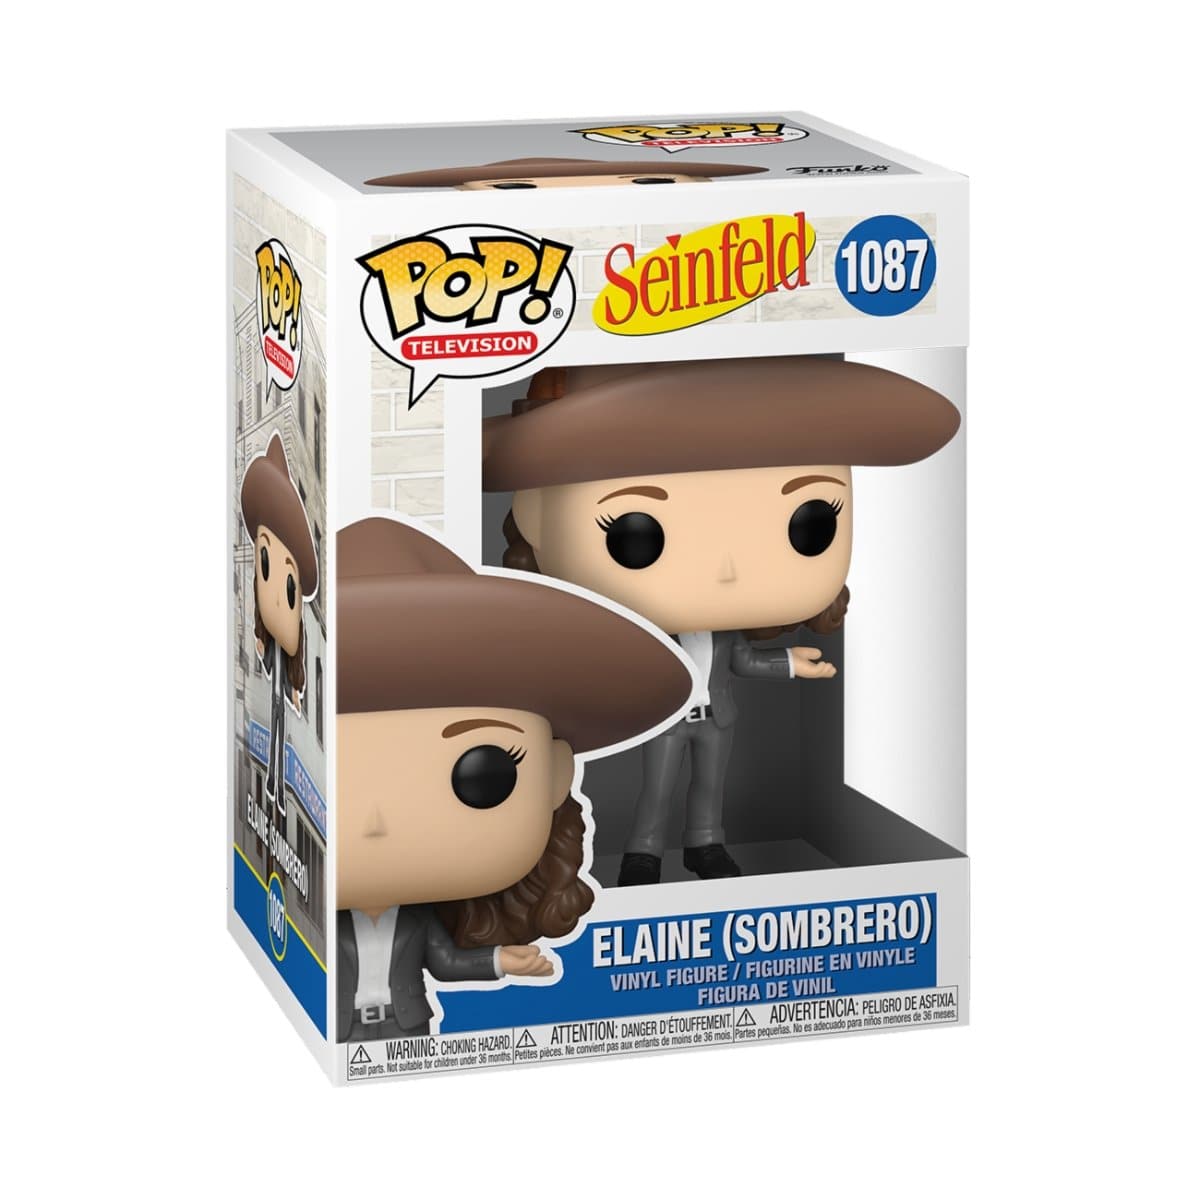 TV - Seinfeld - Elaine in Sombrero POP! Vinyl Figure PREORDER - Pop Figures